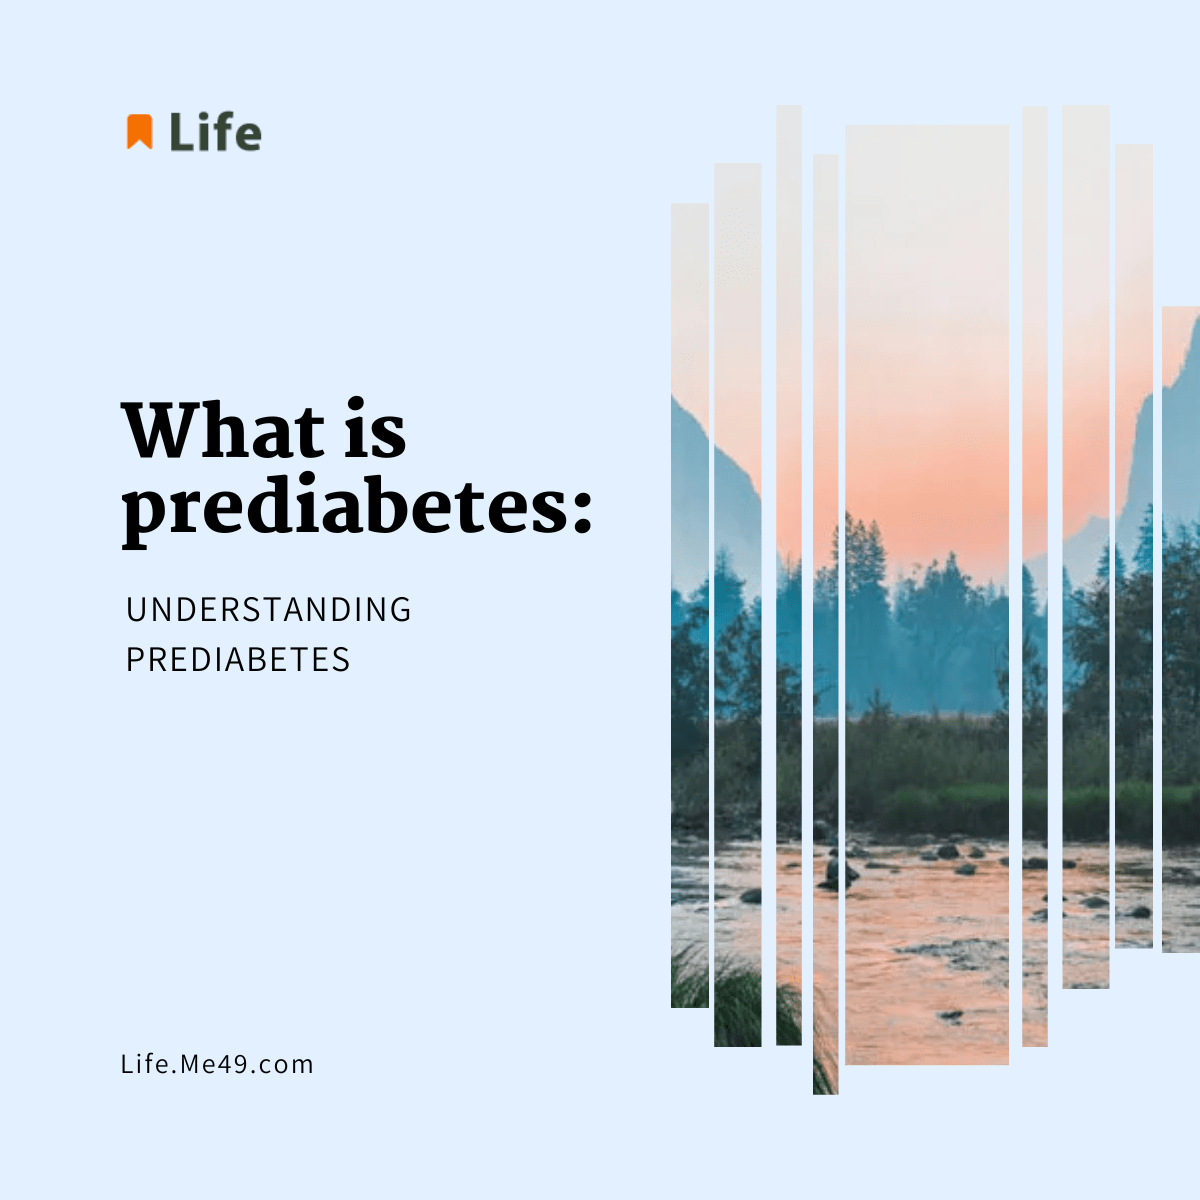 What is prediabetes